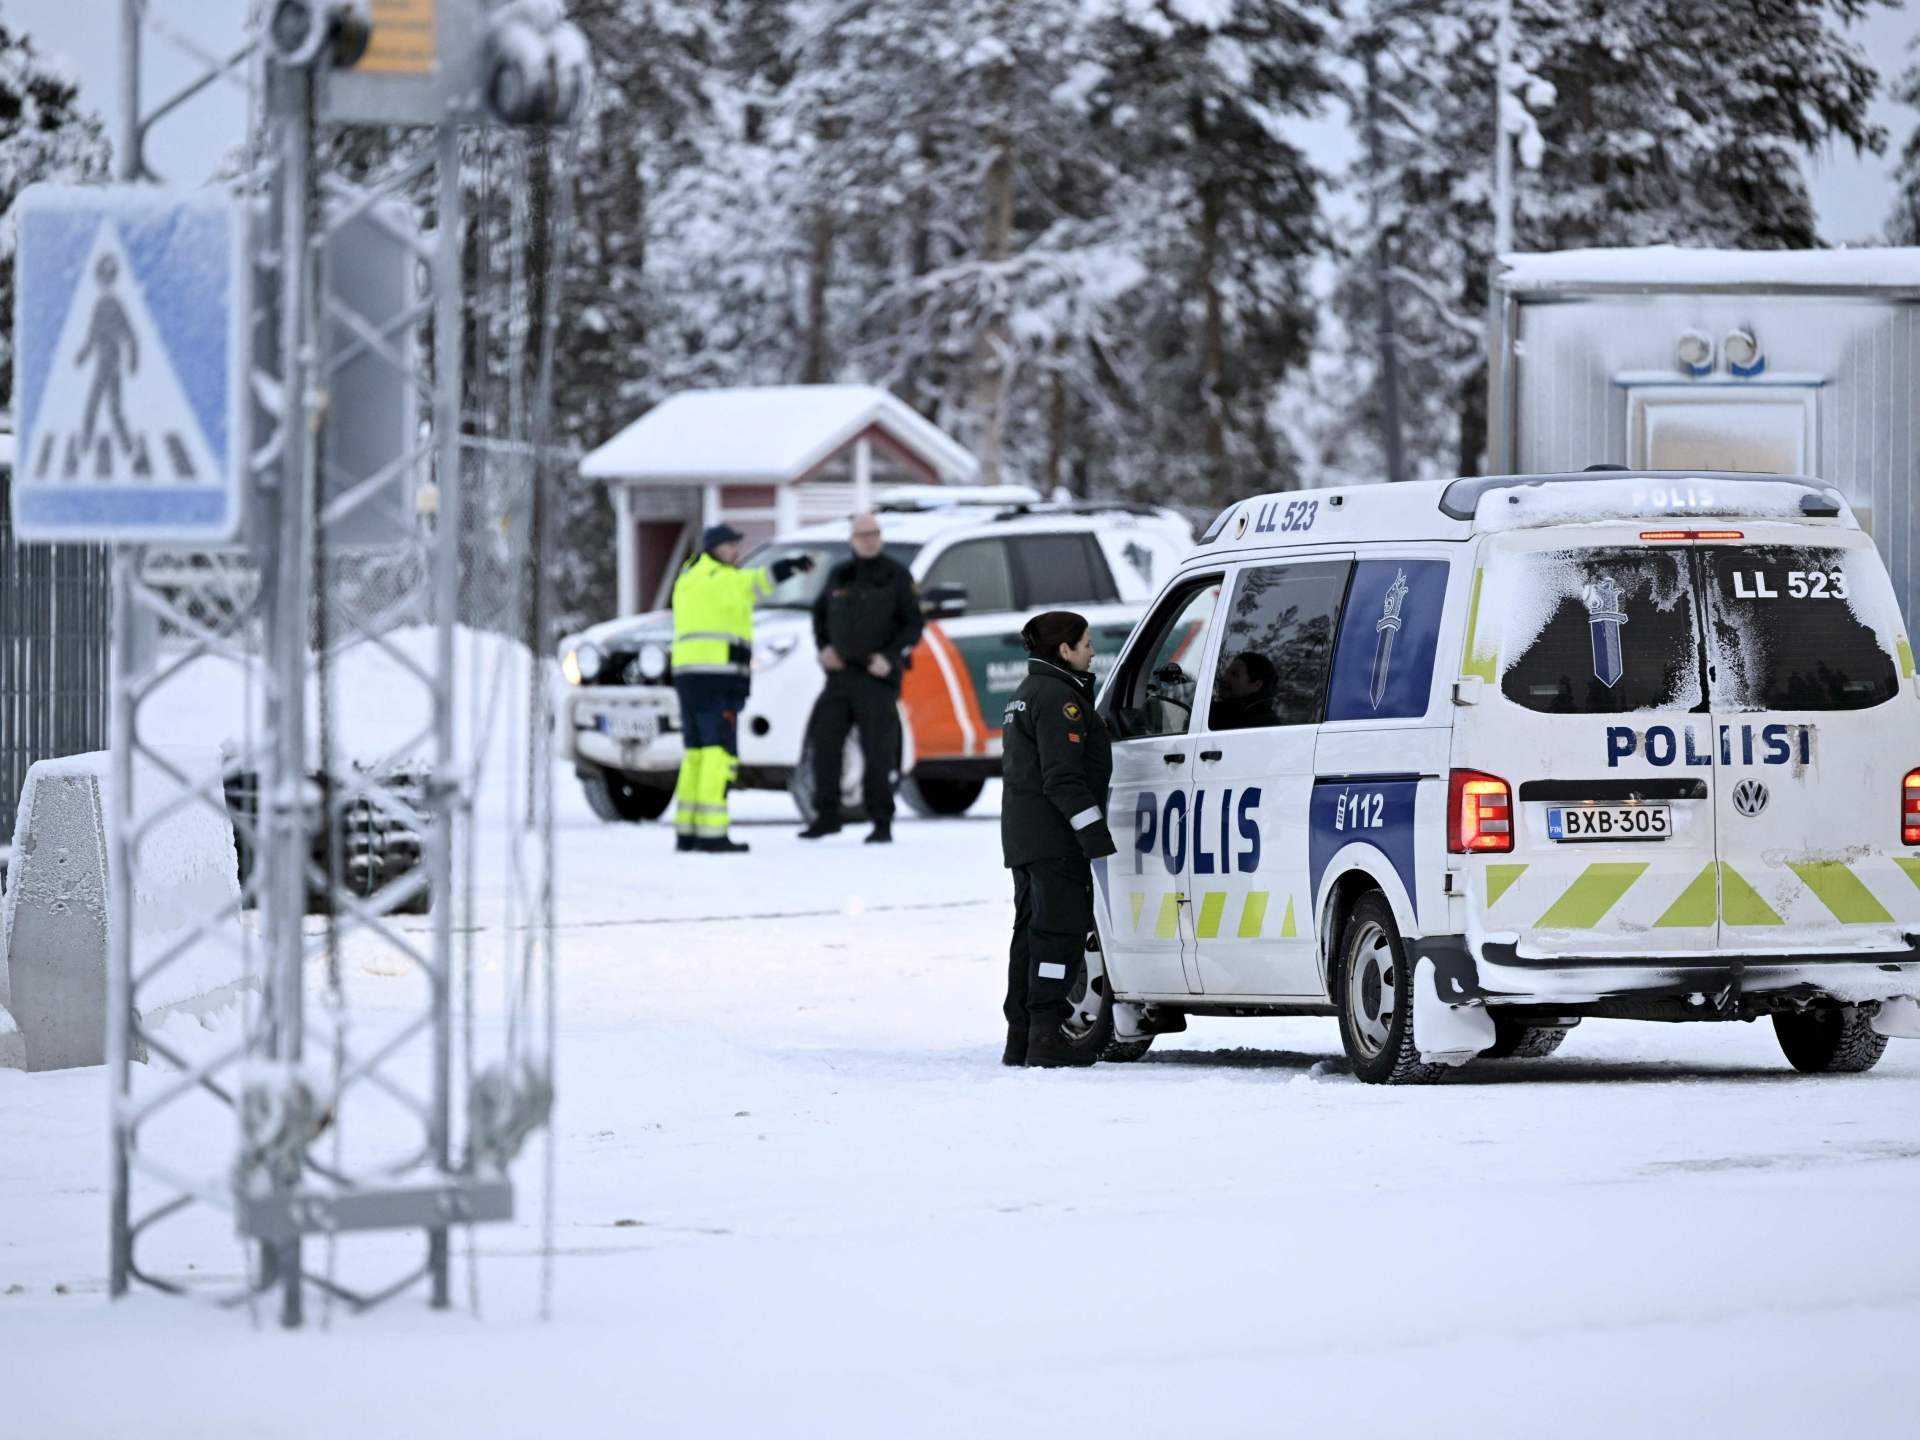 فنلندا تغلق حدودها مع روسيا وتتهمها بالوقوف وراء تدفق اللاجئين | أخبار – البوكس نيوز